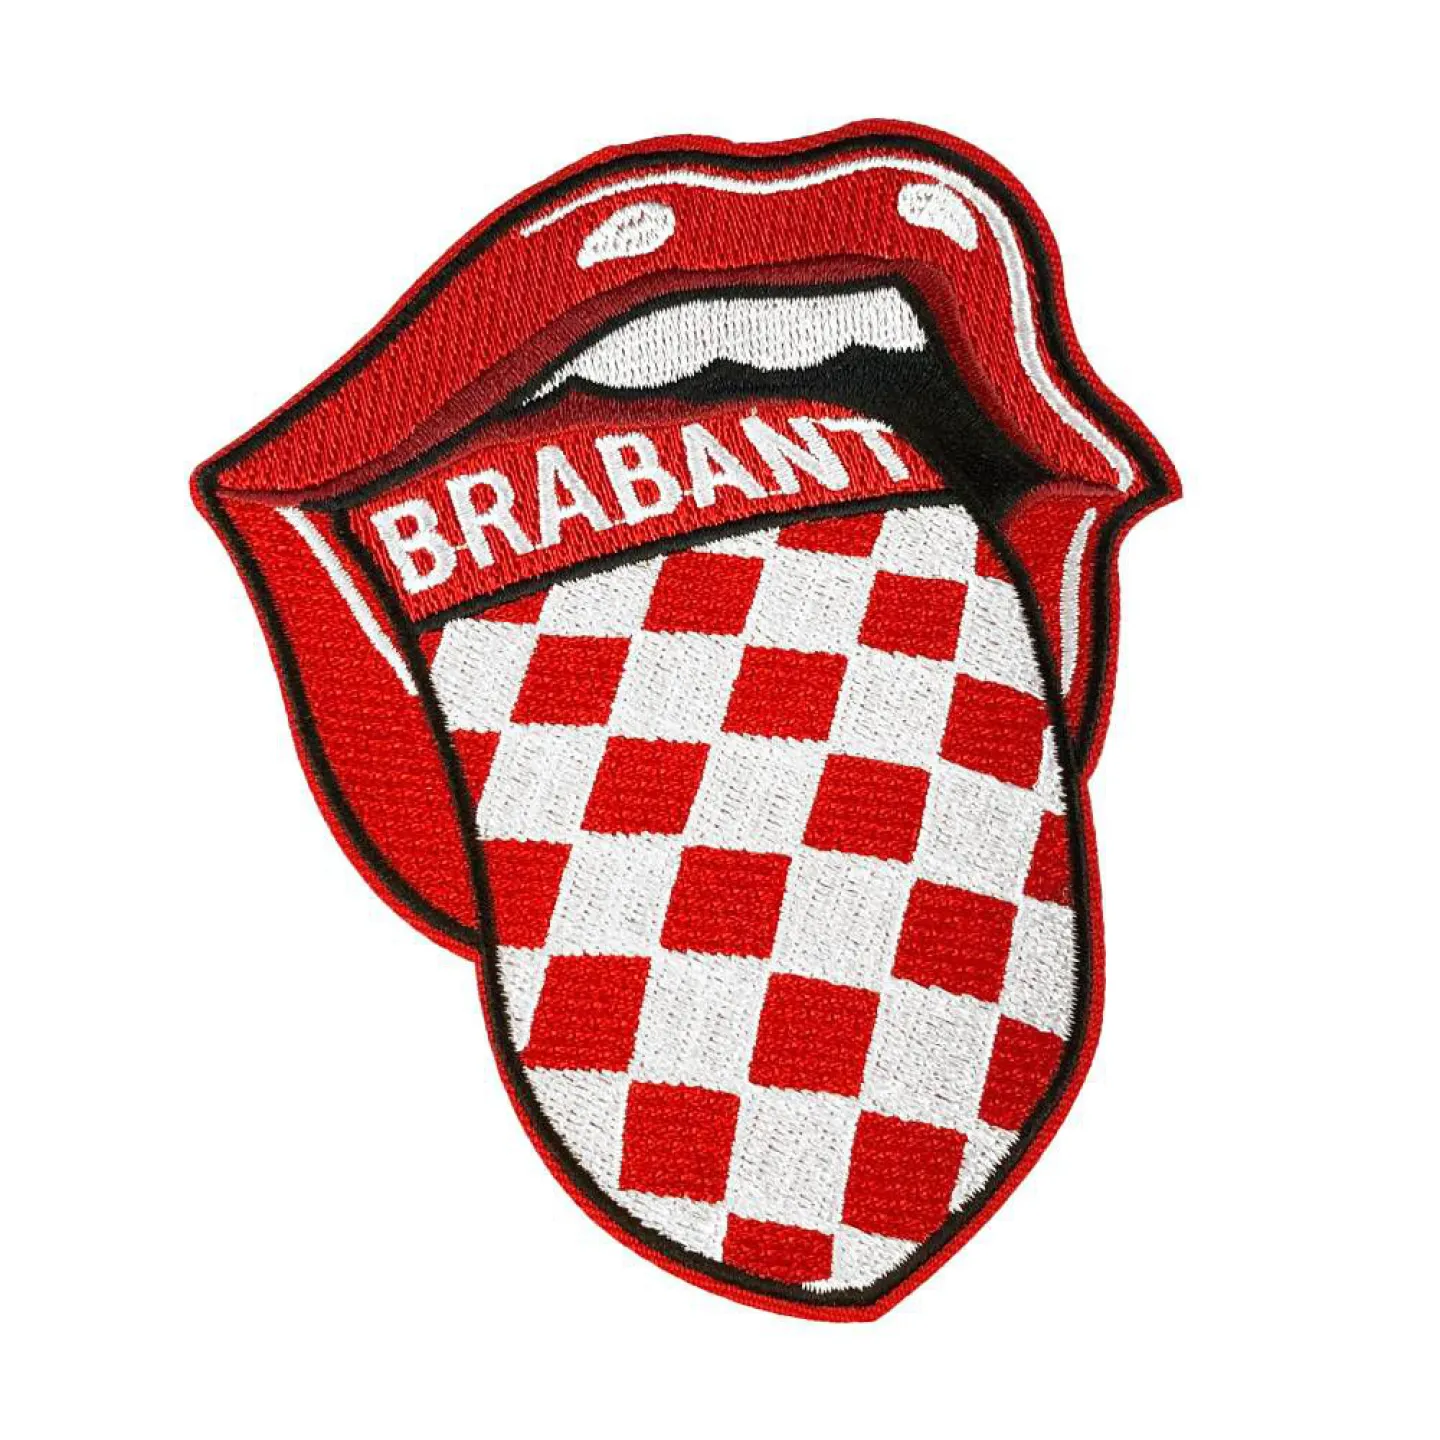 Kruikenstad embleem mond Brabant.